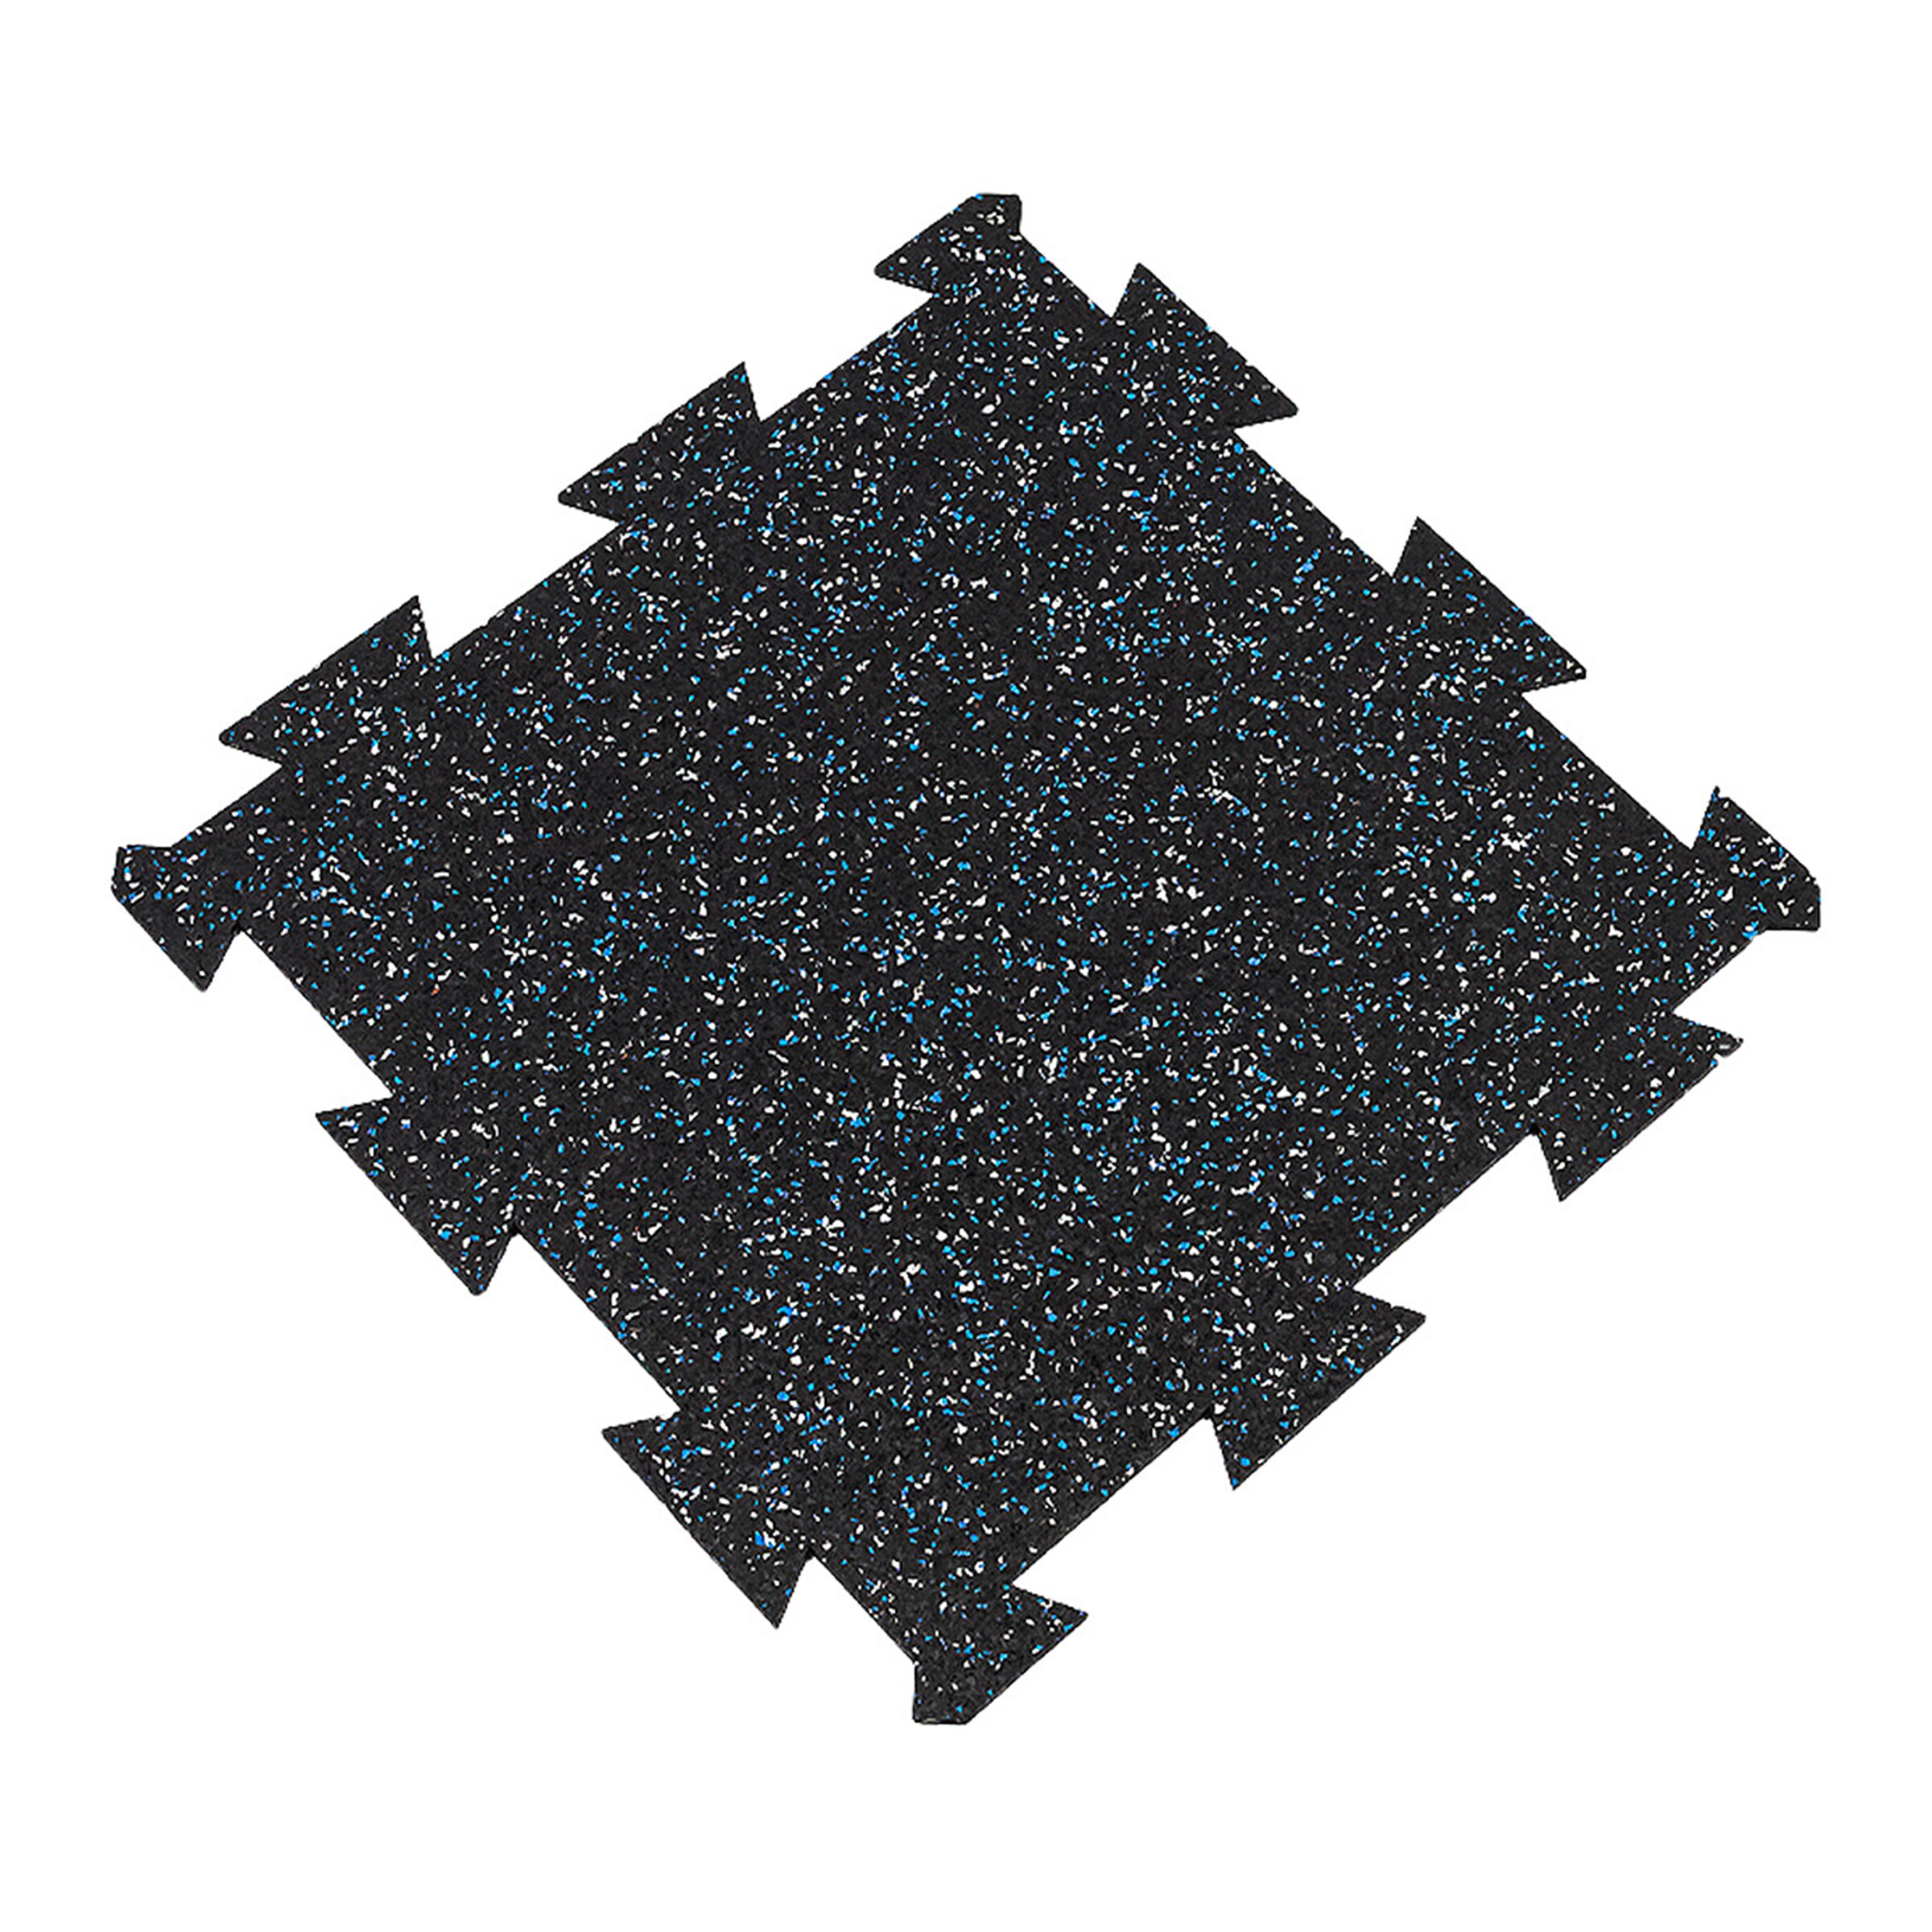 Čierno-bielo-modrá gumová modulová puzzle dlažba (stred) FLOMA FitFlo SF1050 - dĺžka 50 cm, šírka 50 cm, výška 1,6 cm